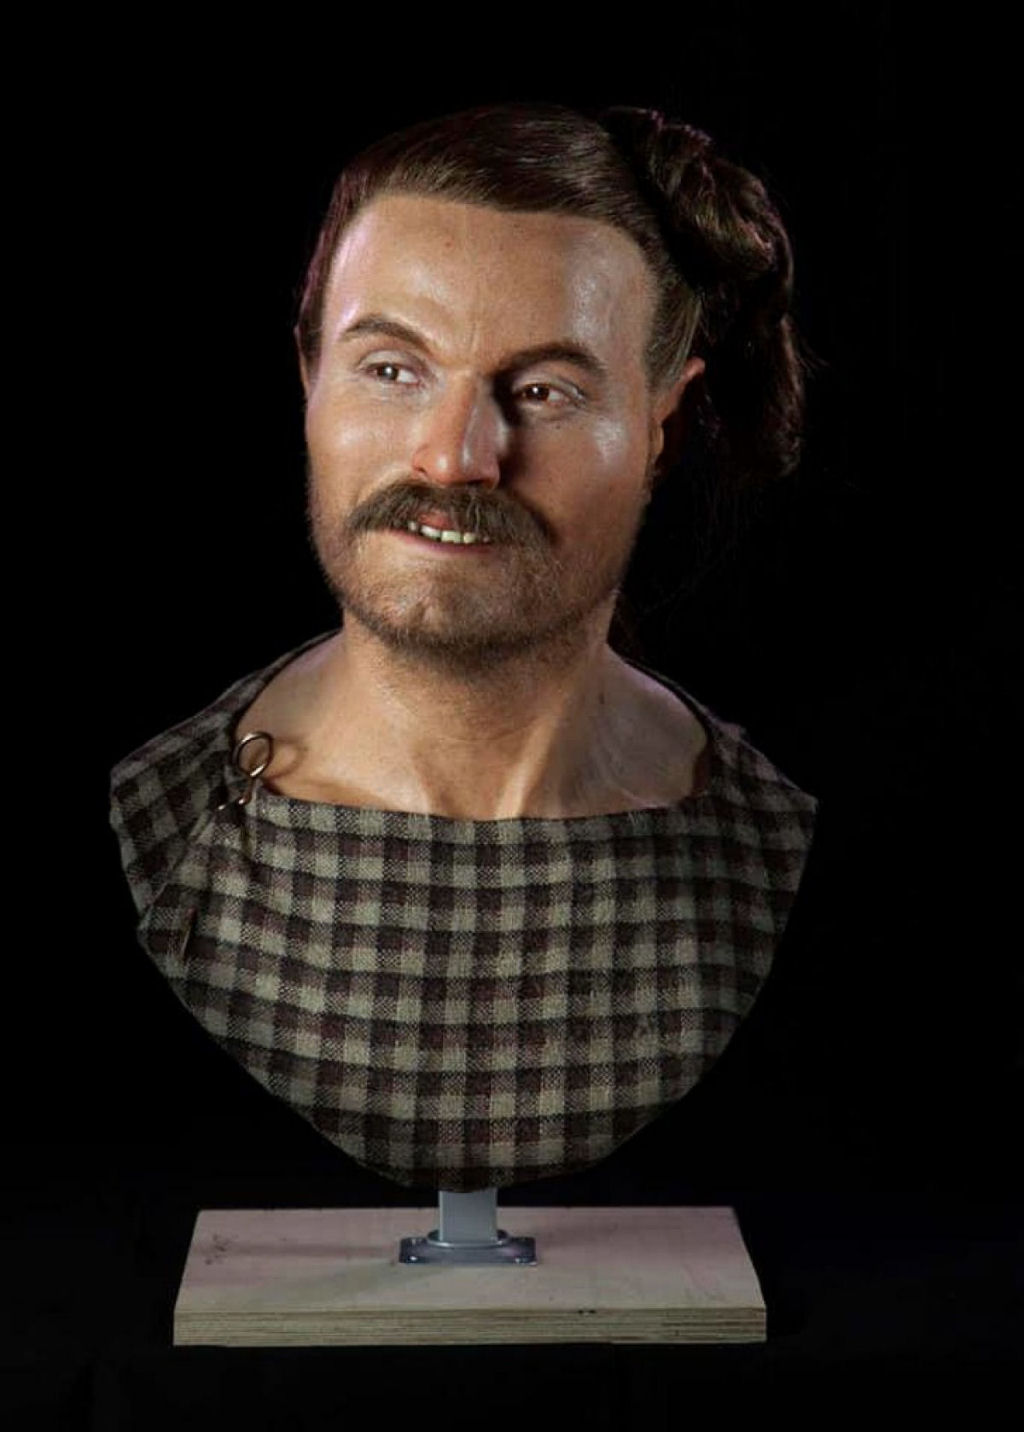 Arqueólogo escultor mostra como era o rosto de alguns ancestrais de uma forma inédita até hoje 03